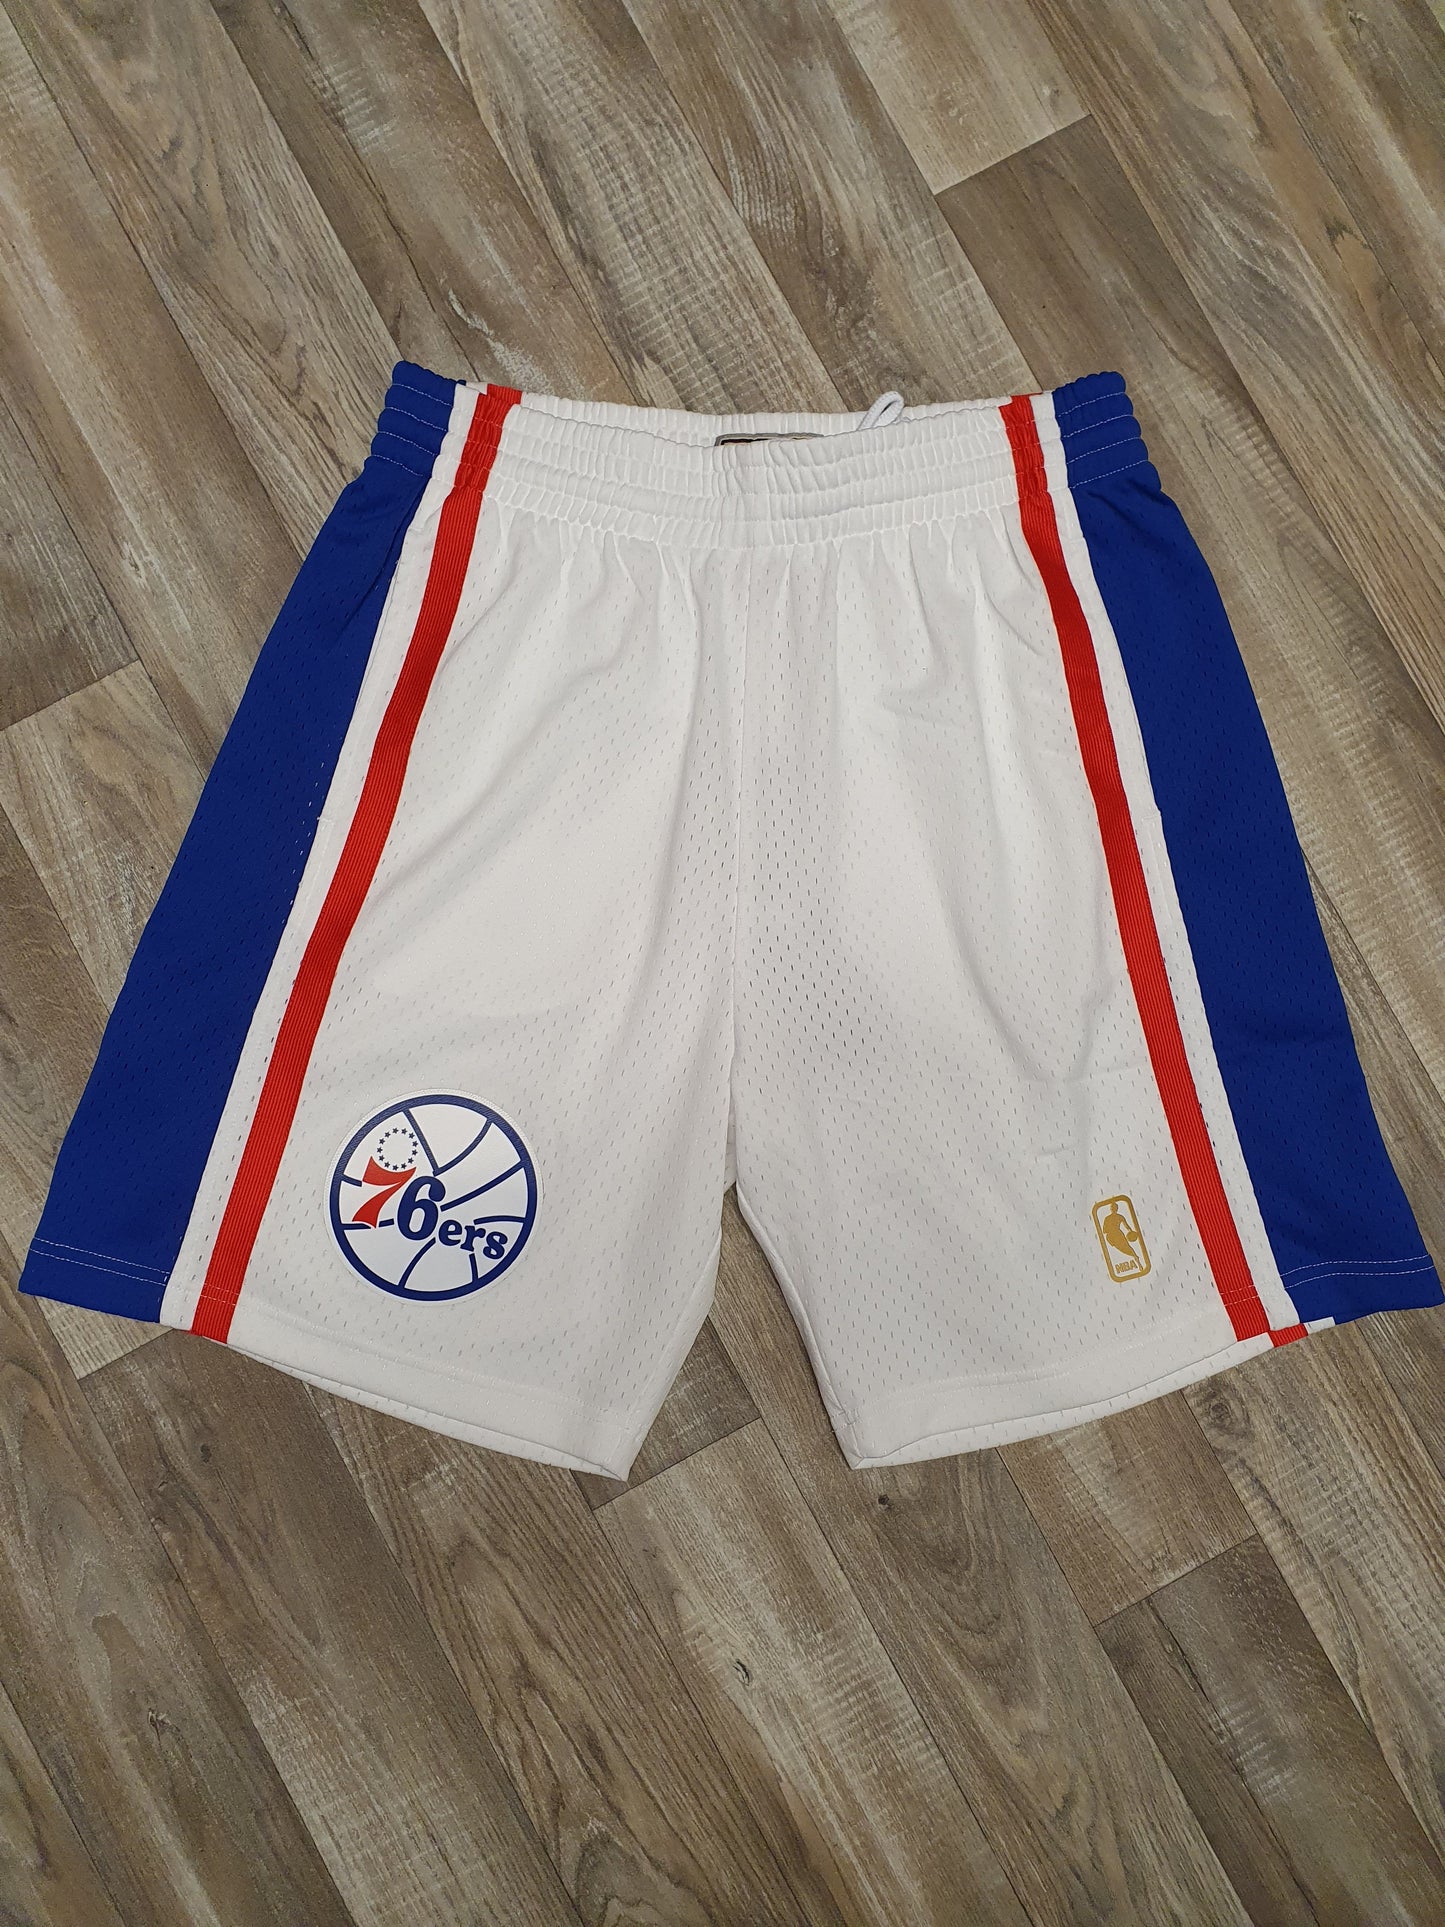 Philadelphia 76ers Shorts Size Large